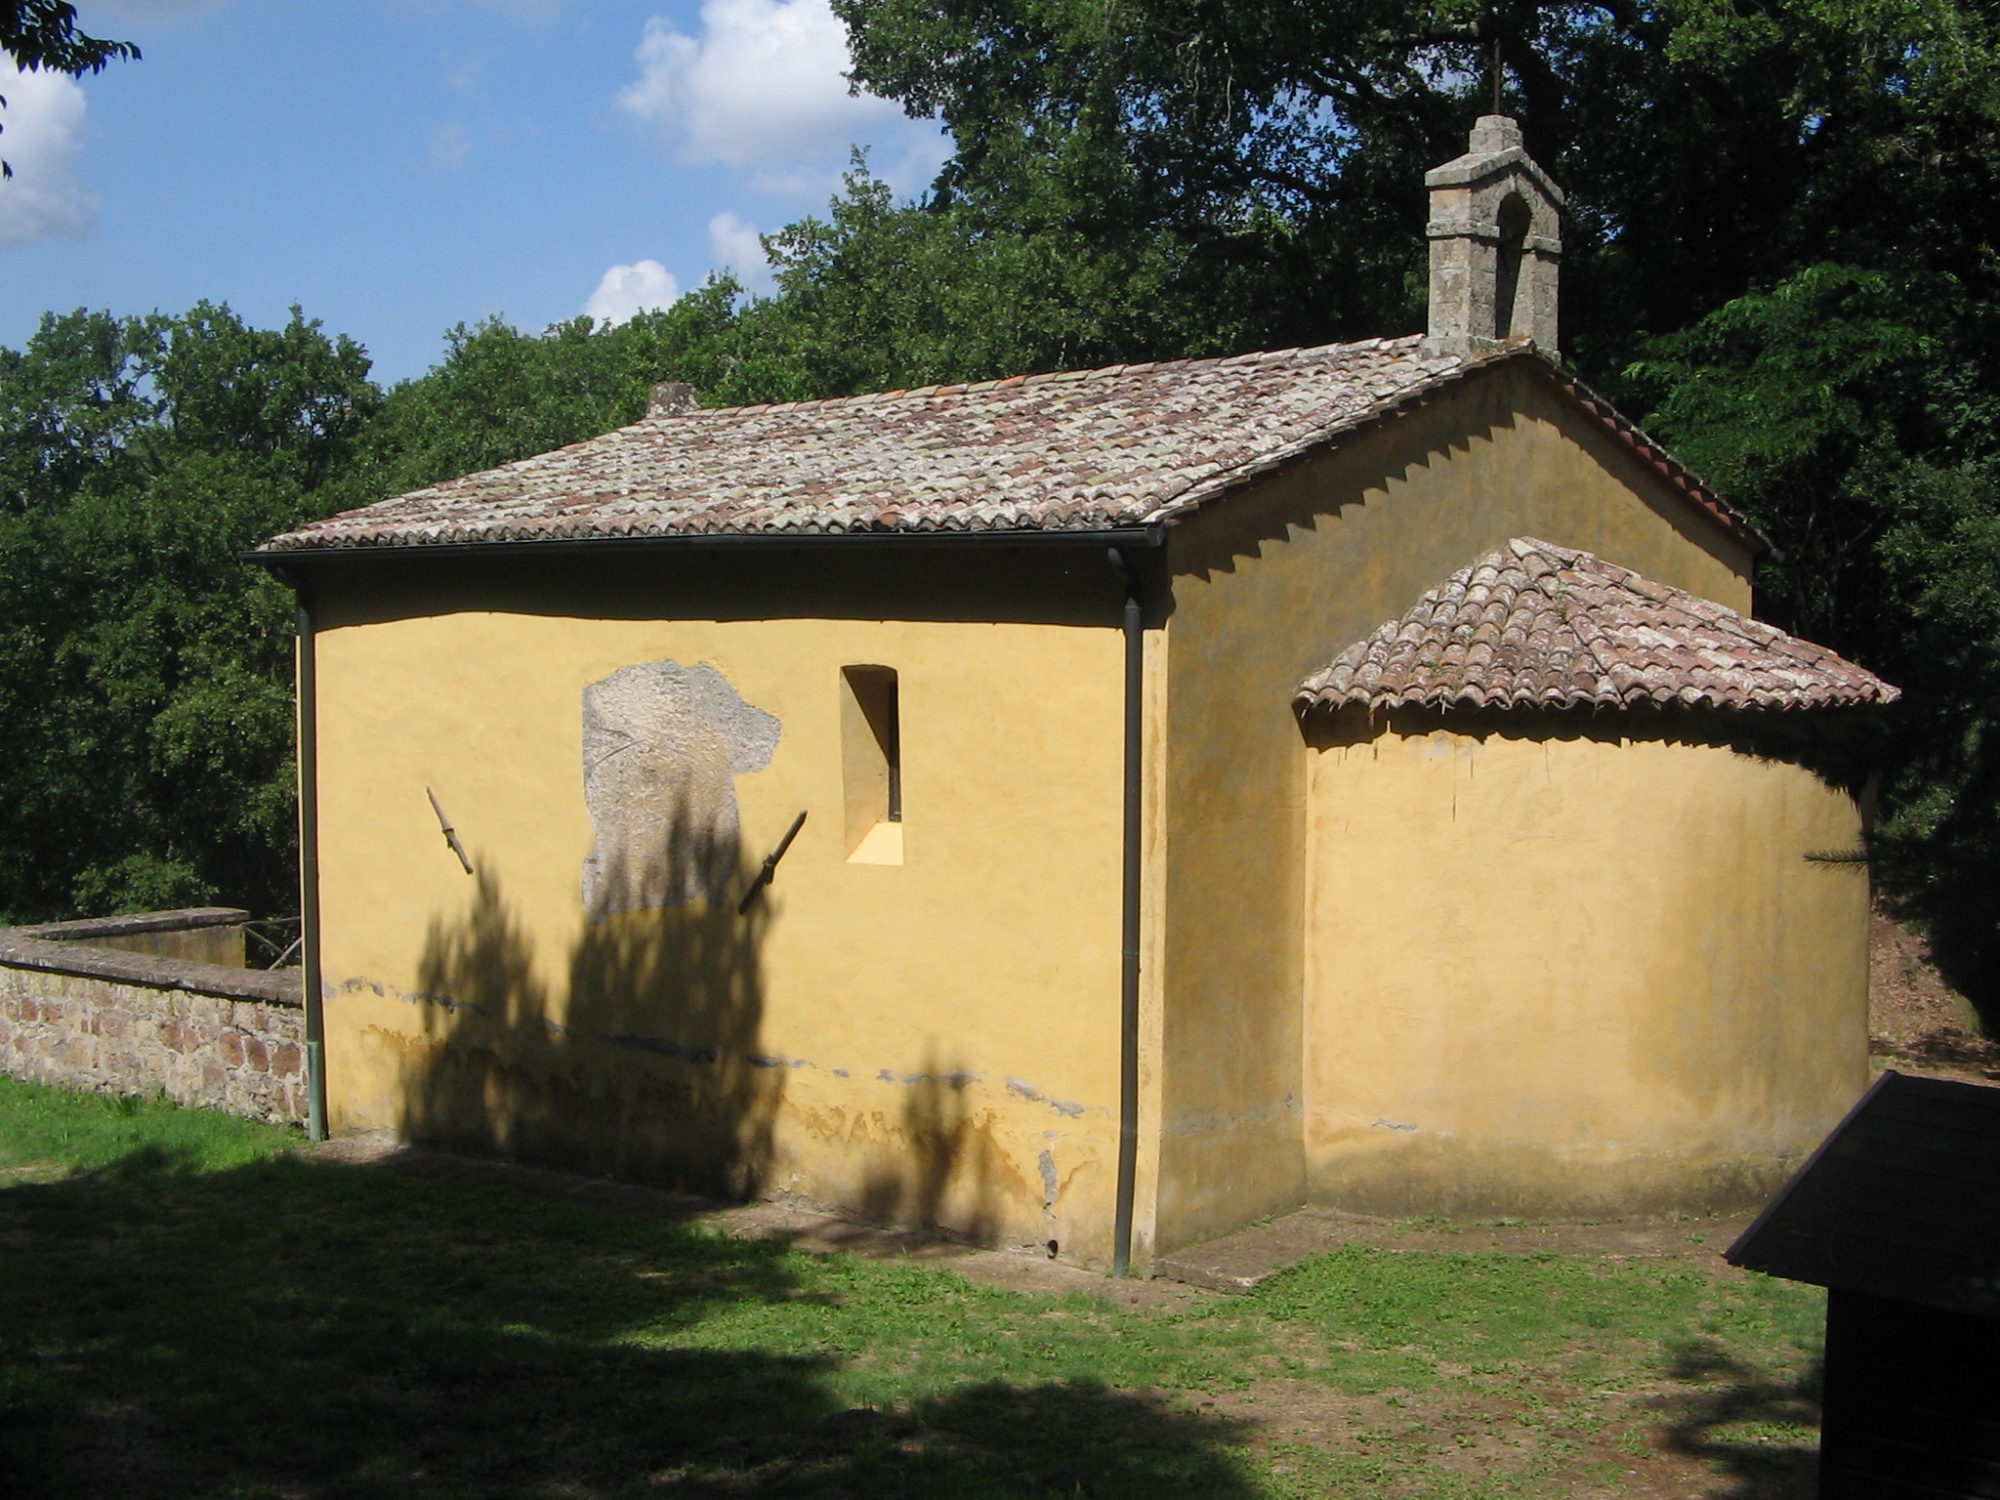 Small Church of San Rocco in Sorano